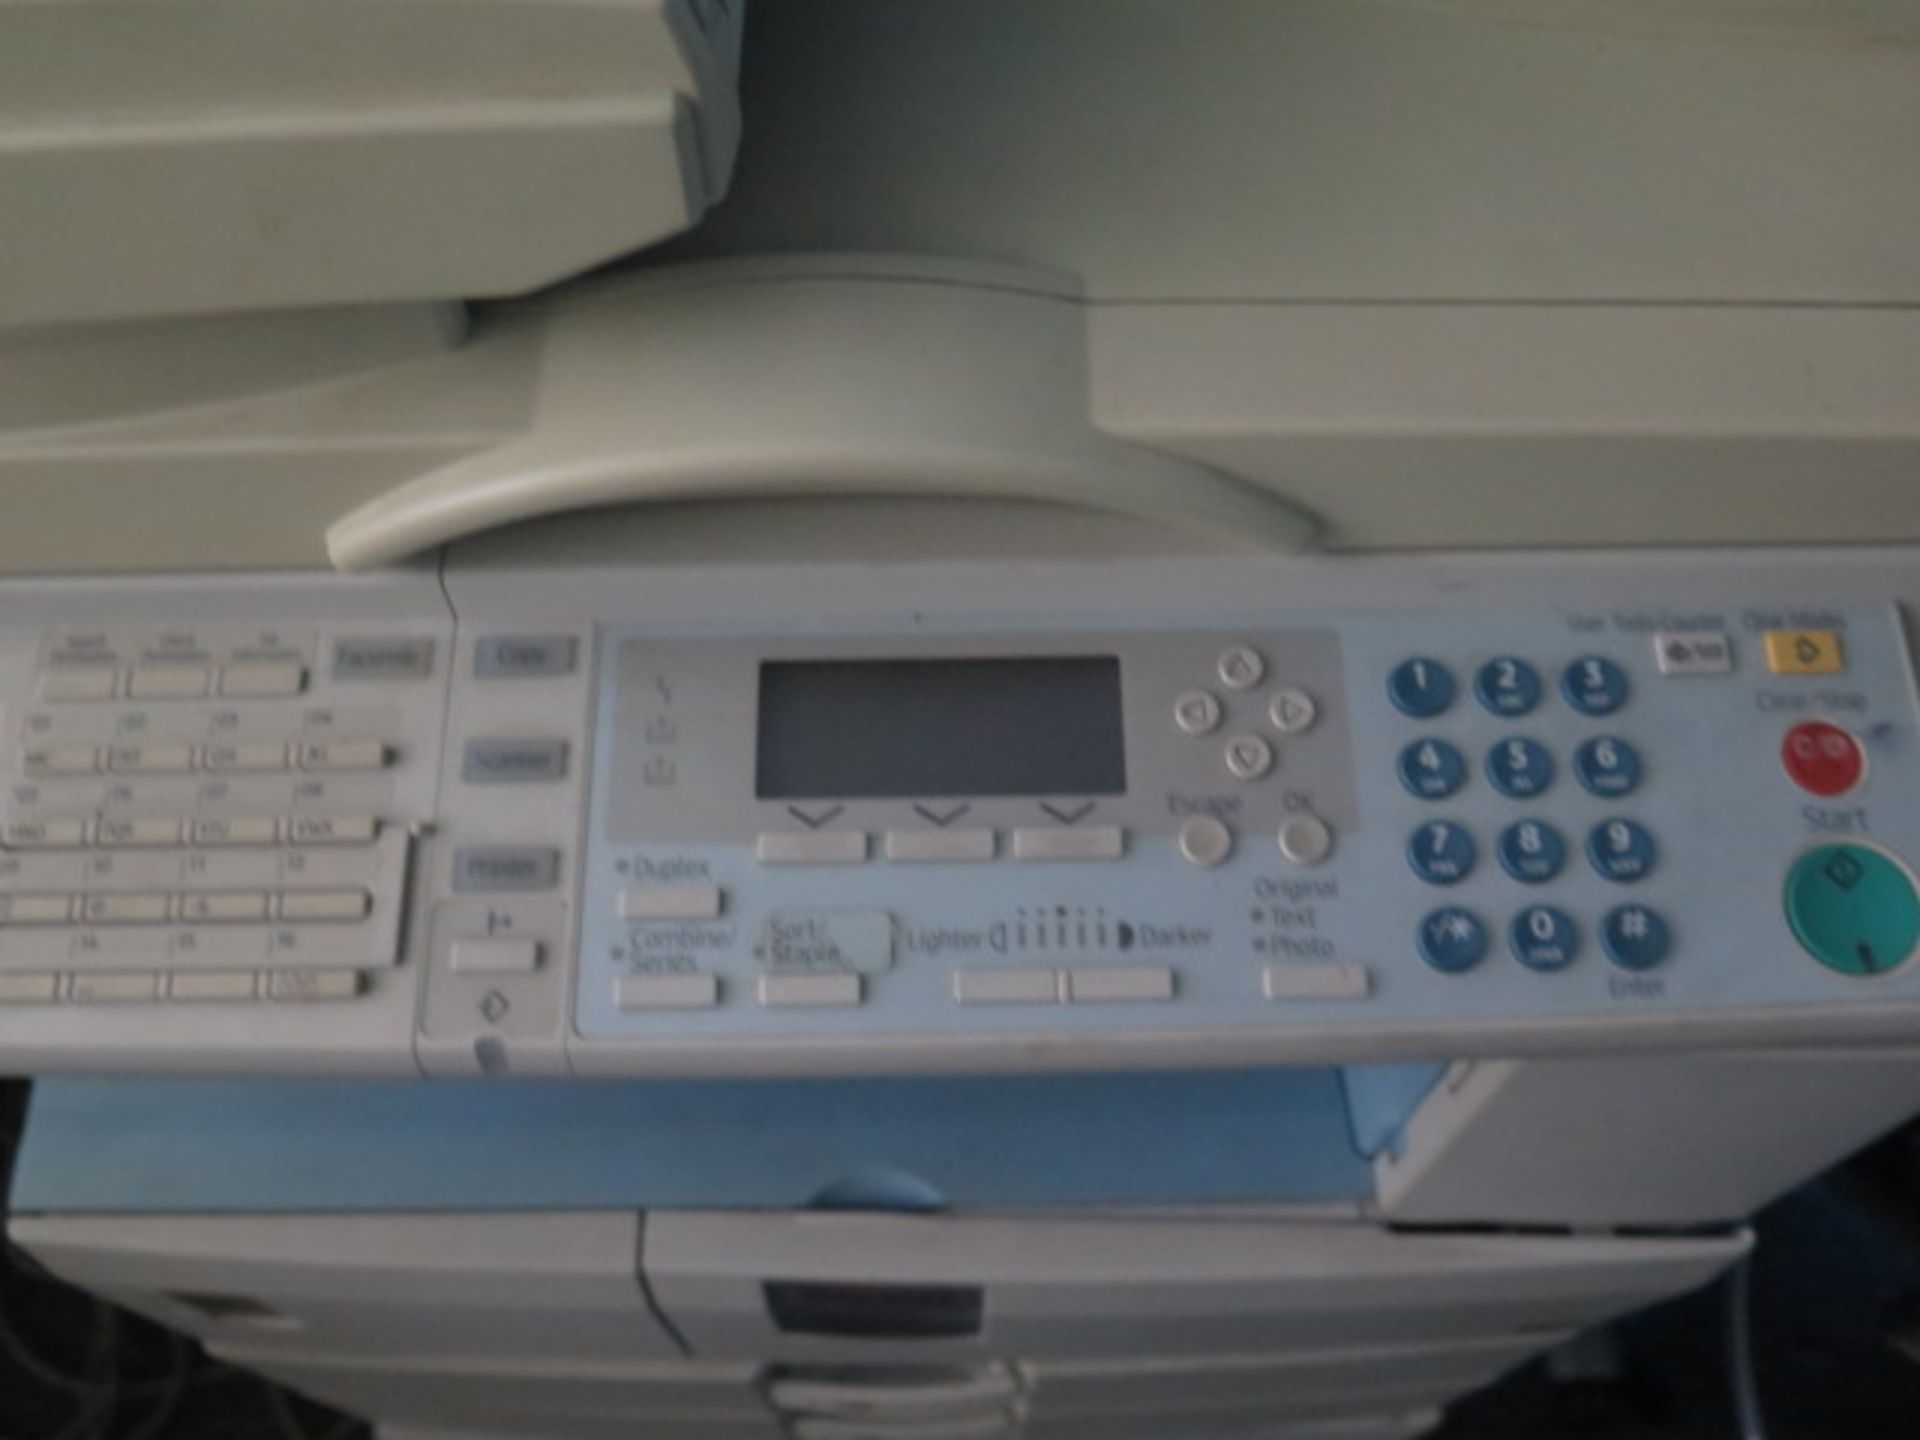 Ricoh Aficio MP-2500 Office Copy Machine (SOLD AS-IS - NO WARRANTY) - Image 4 of 5